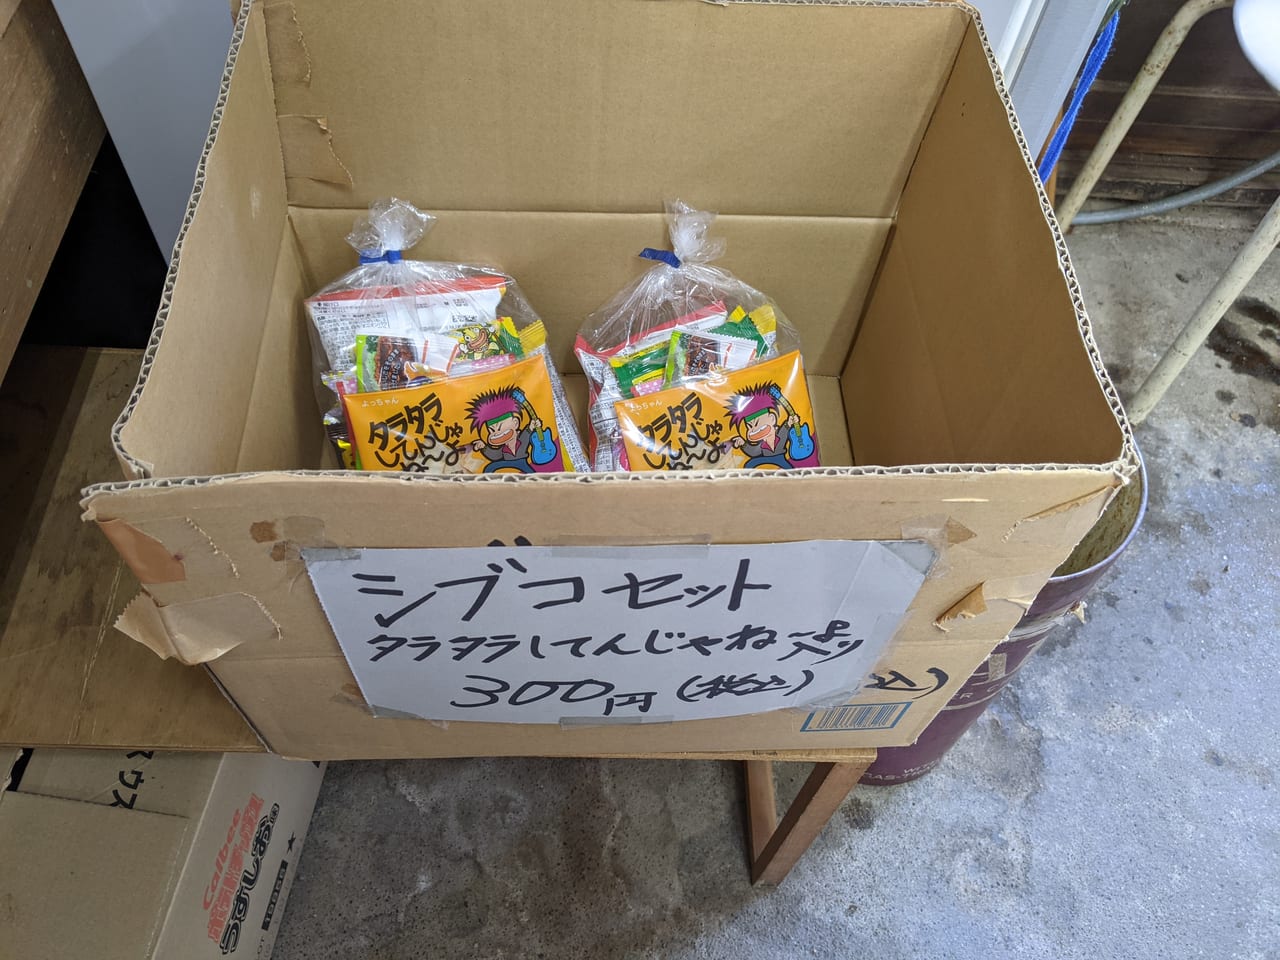 駄菓子屋坪井商店のシブコセット